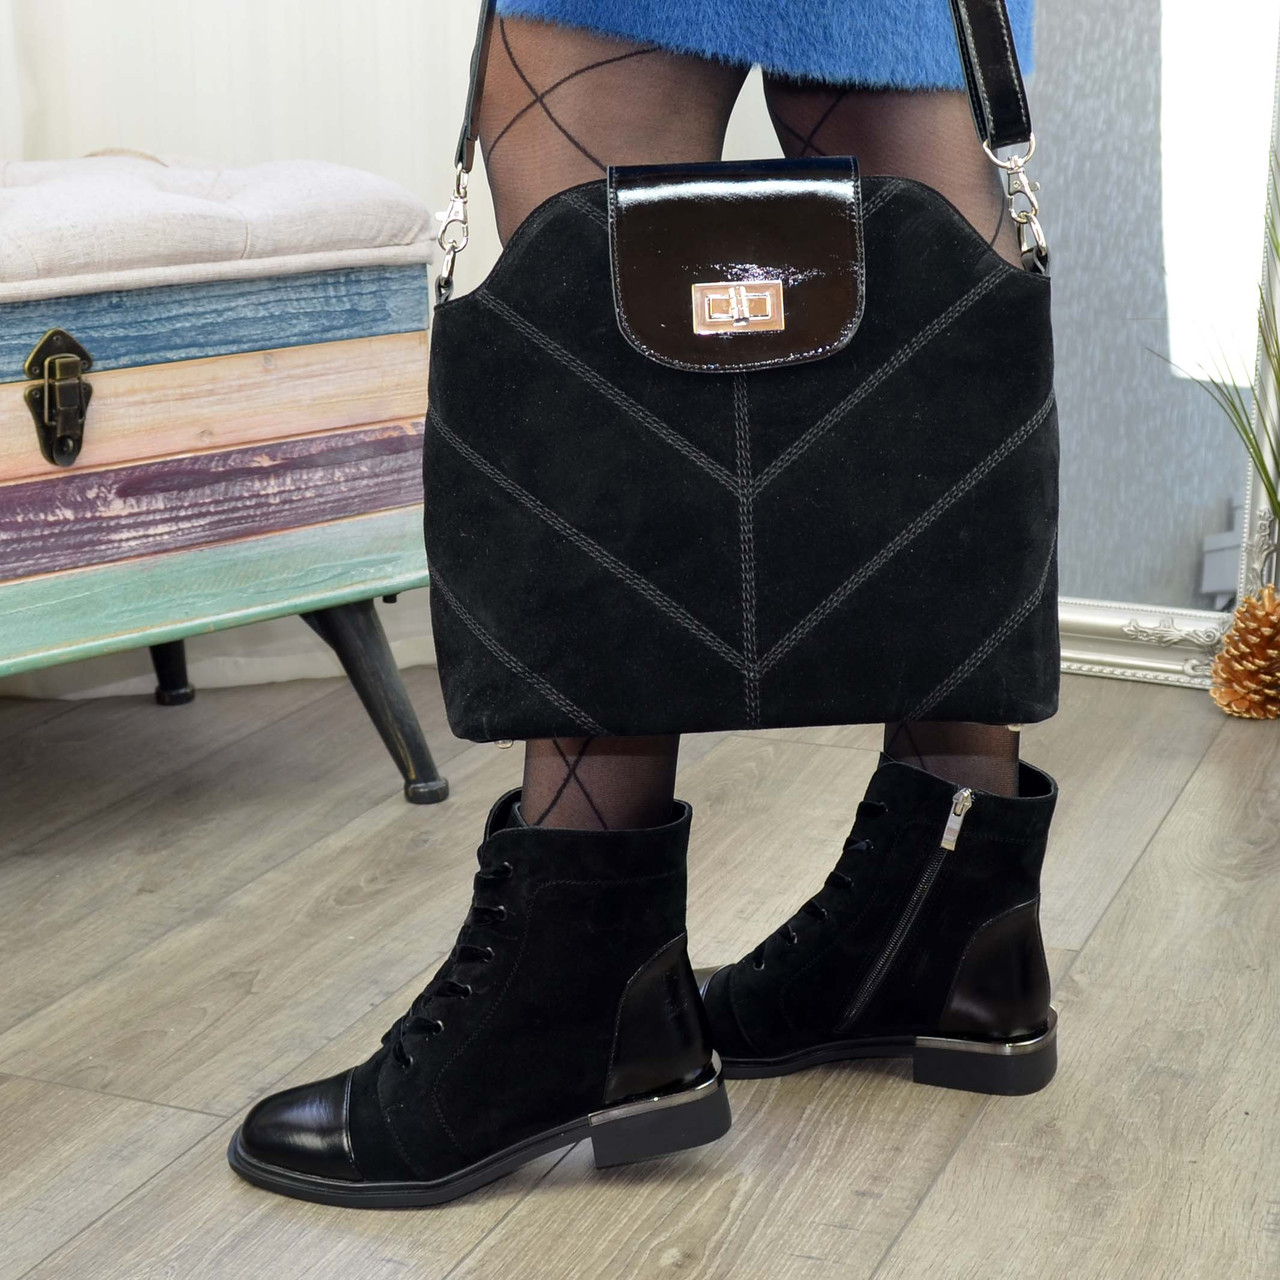 Ботинки женские замшевые на устойчивом каблуке, декорированы лаковыми вставками. Цвет черный, фото 7